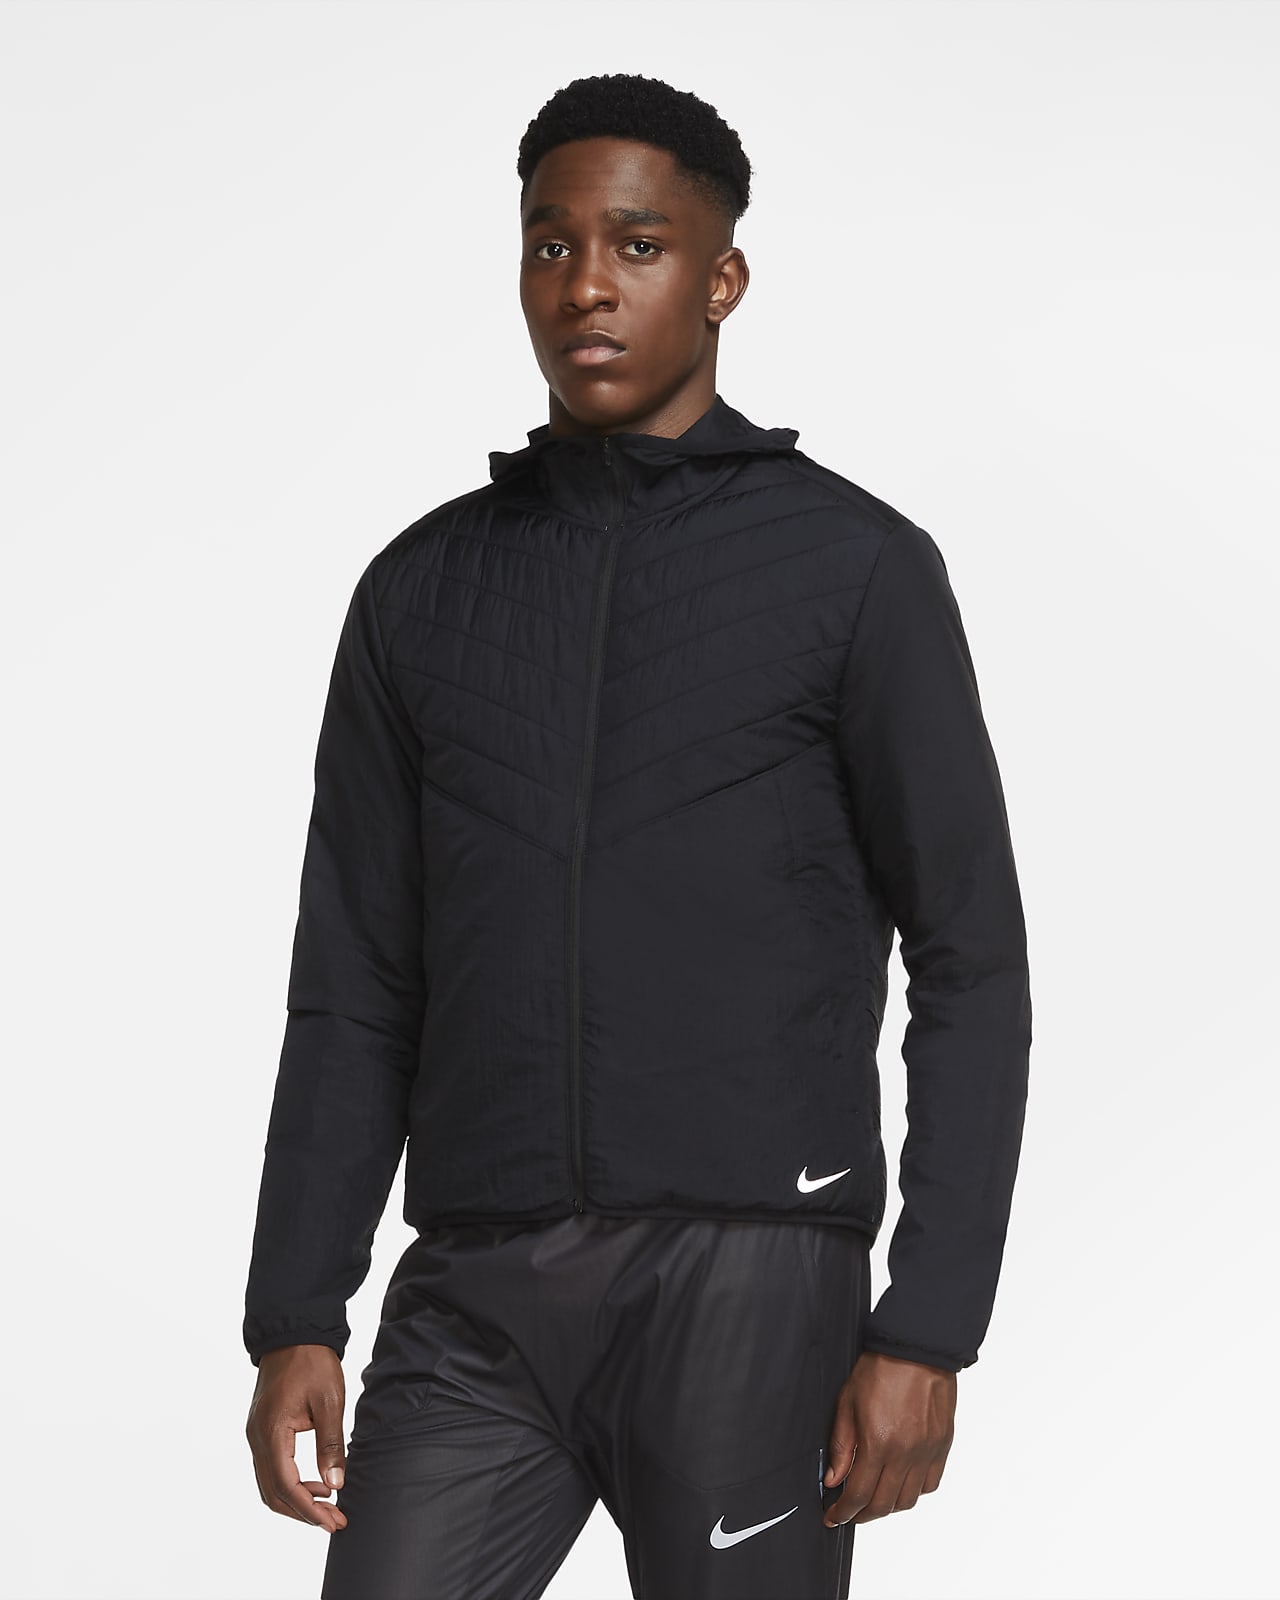 Nike AeroLayer Men's Running Jacket. Nike LU